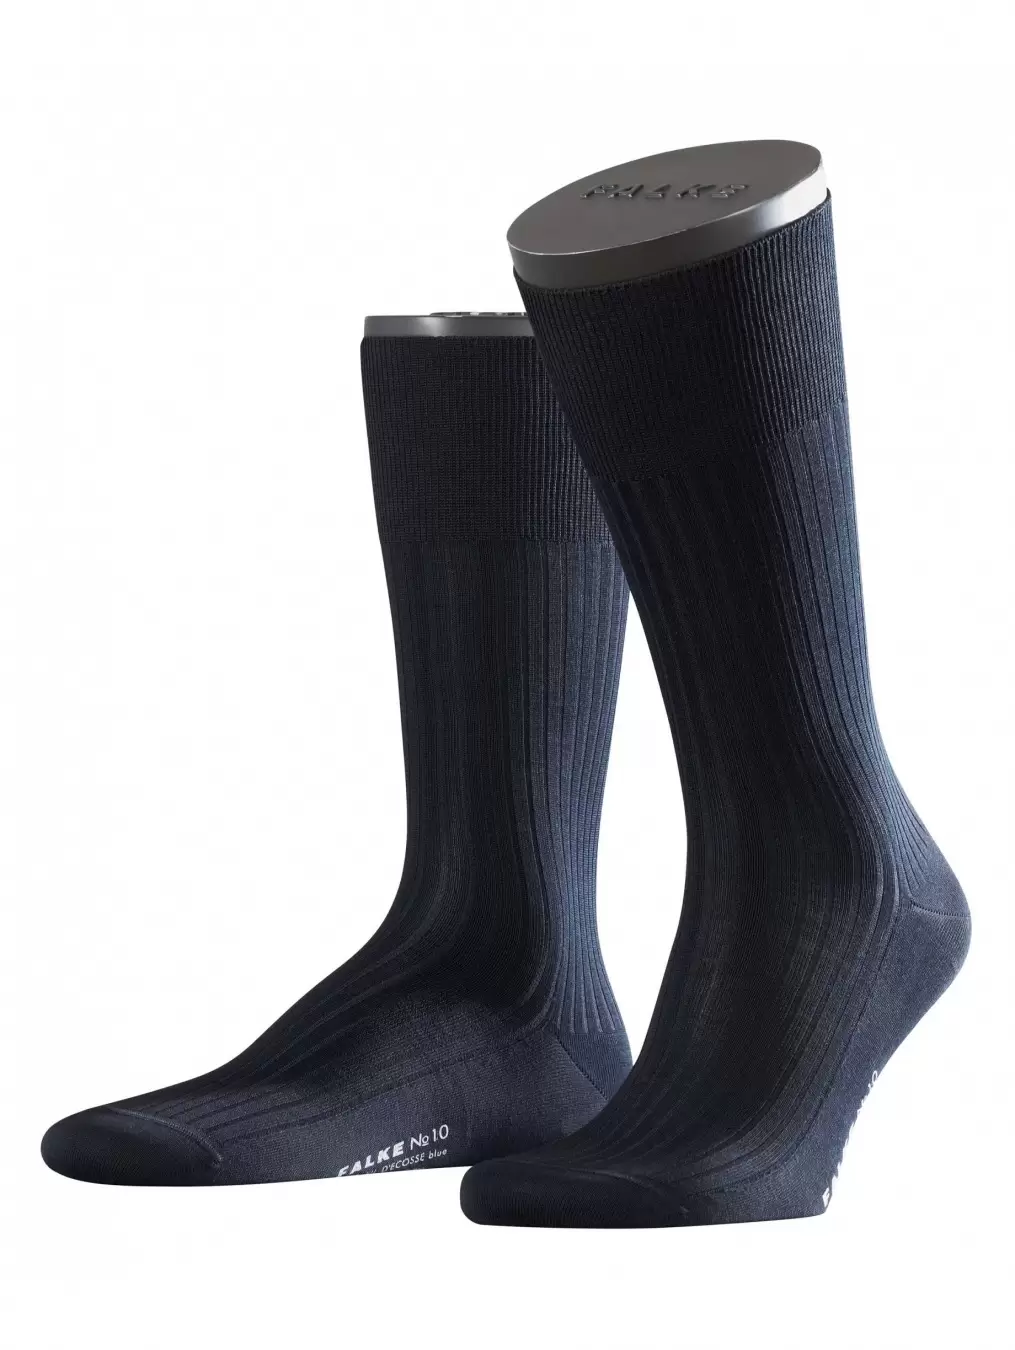 Falke №10 14649, мужские носки (изображение 1)